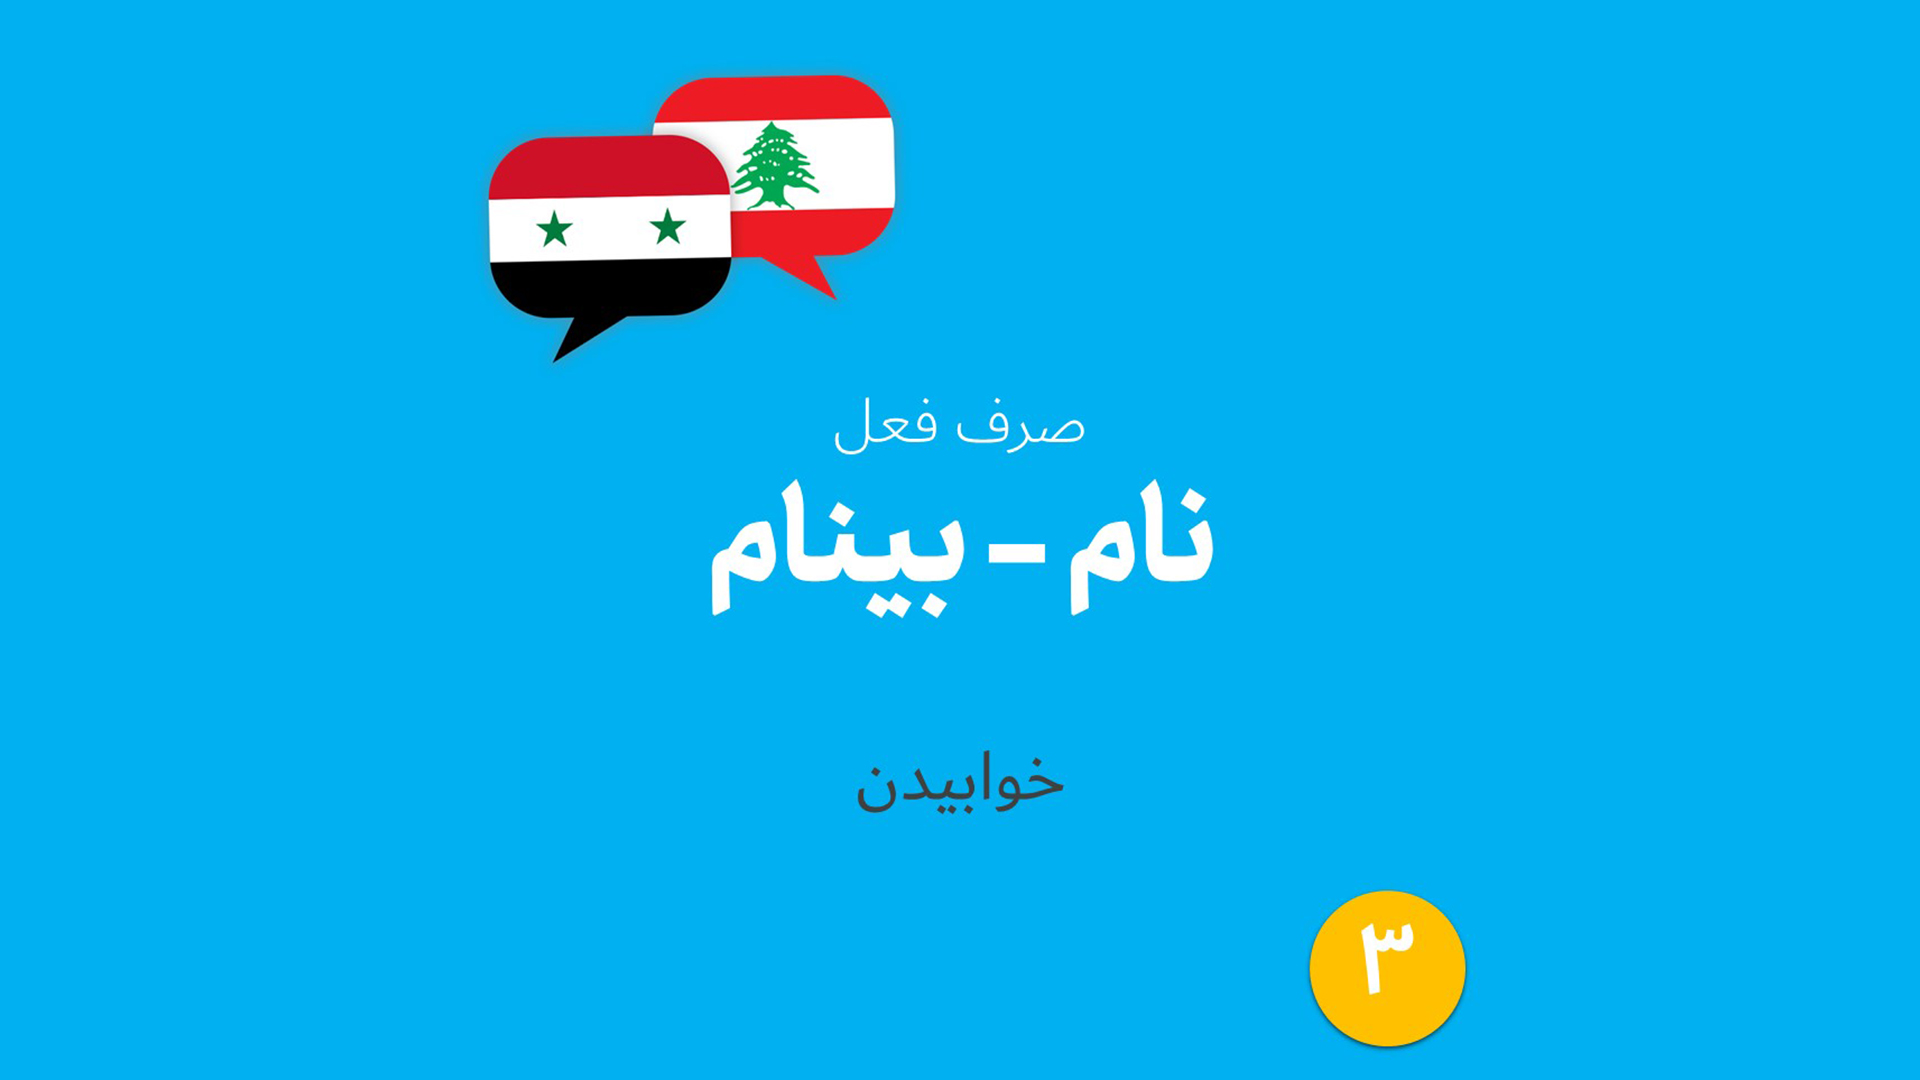 صرف فعل عربی «خوابیدن» به لهجه لبنانی و سوری (03)